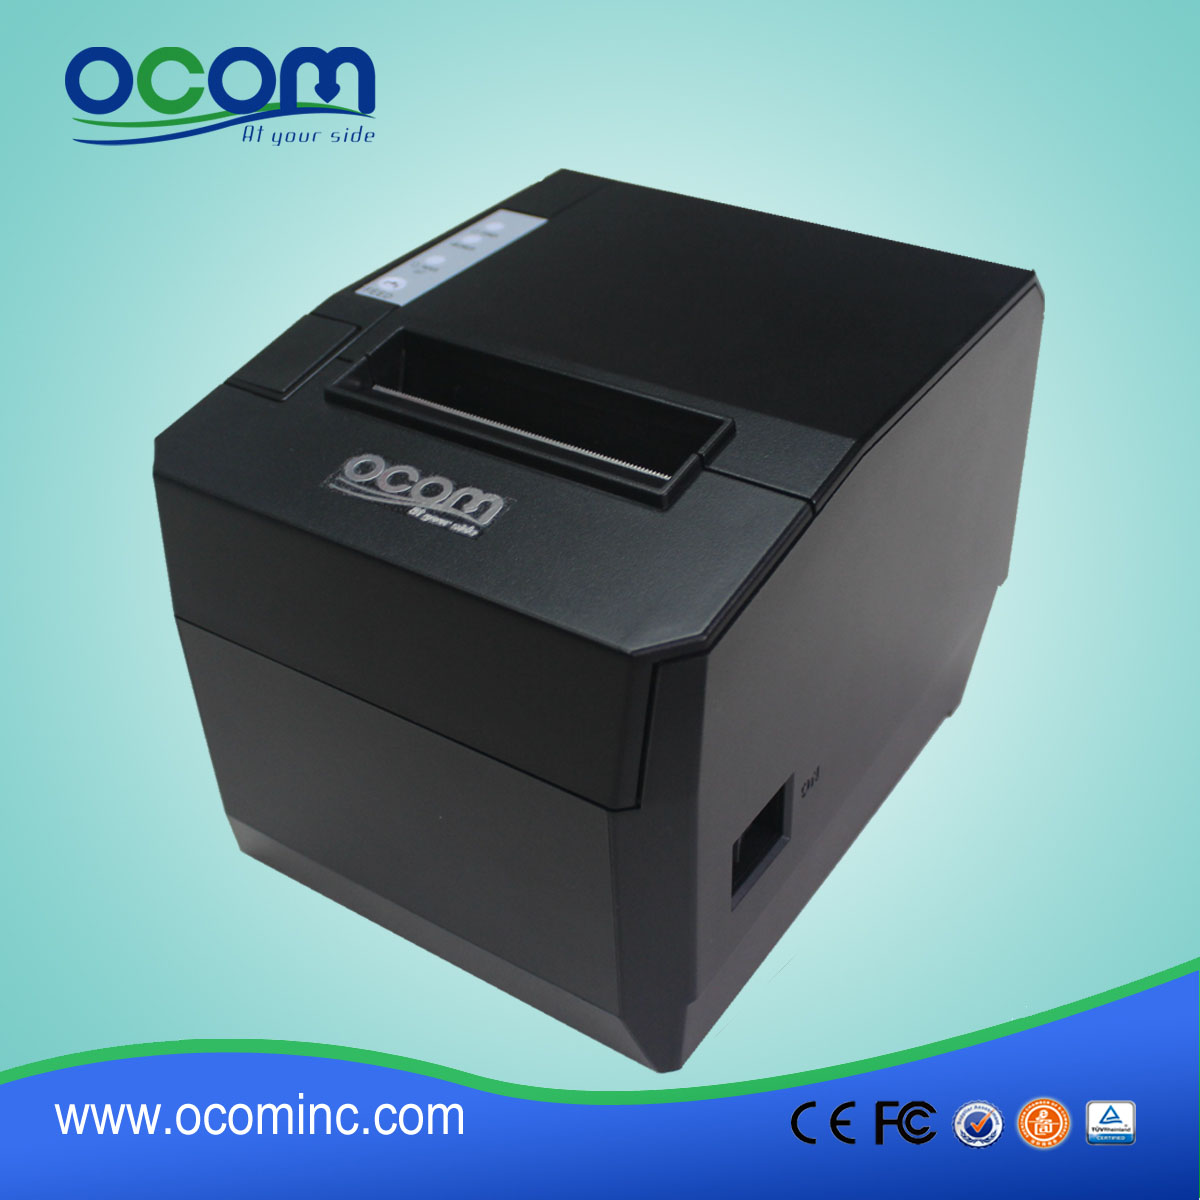 OCPP-88A-URL 80mm imprimante thermique bluetooth avec coupeur automatique Pour android